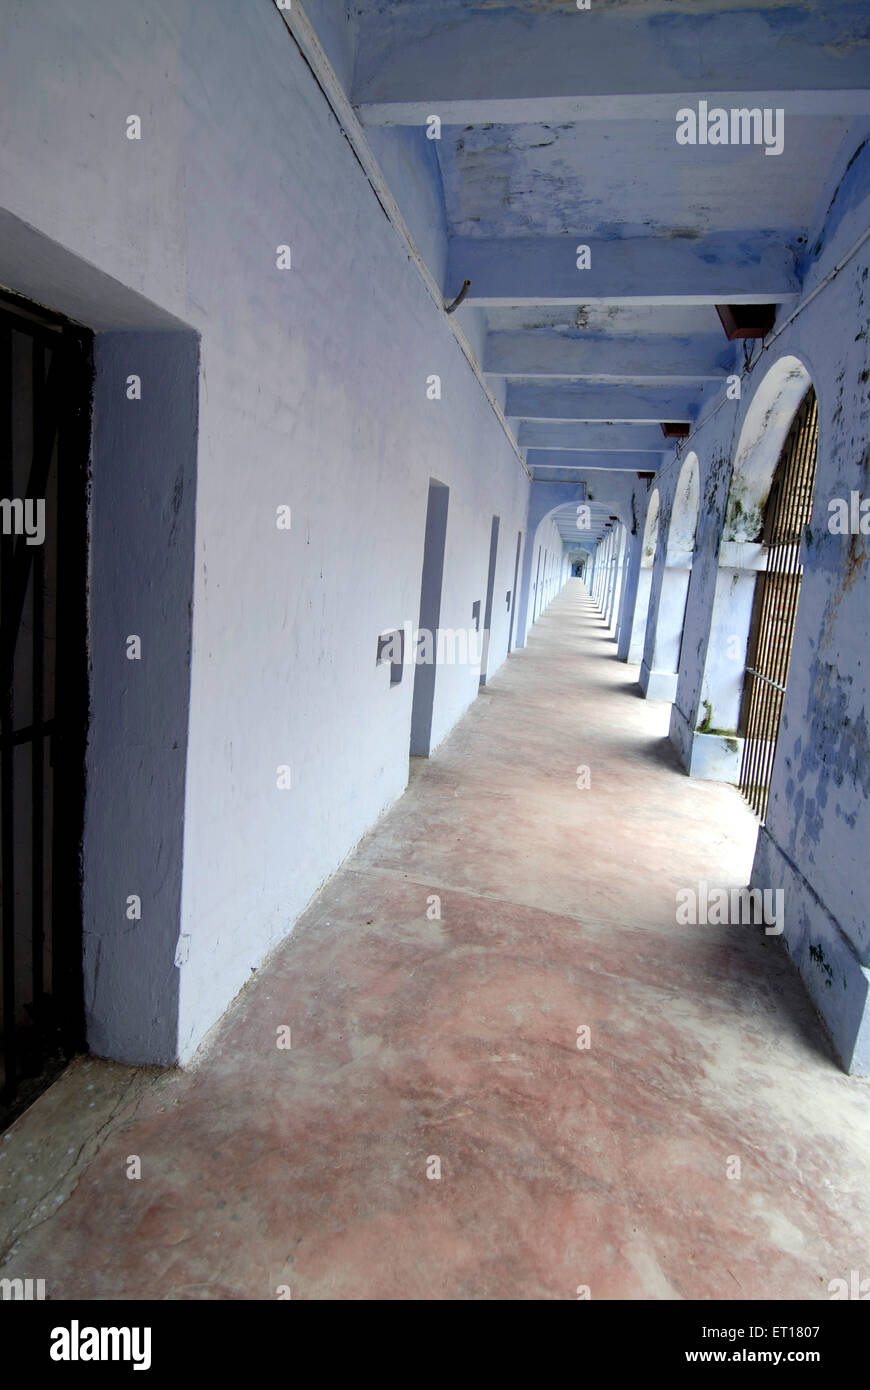 Passage ou couloir dans la prison cellulaire, Port Blair, îles Andaman et Nicobar, territoire de l'Union de l'Inde, UT, Inde, Asie Banque D'Images